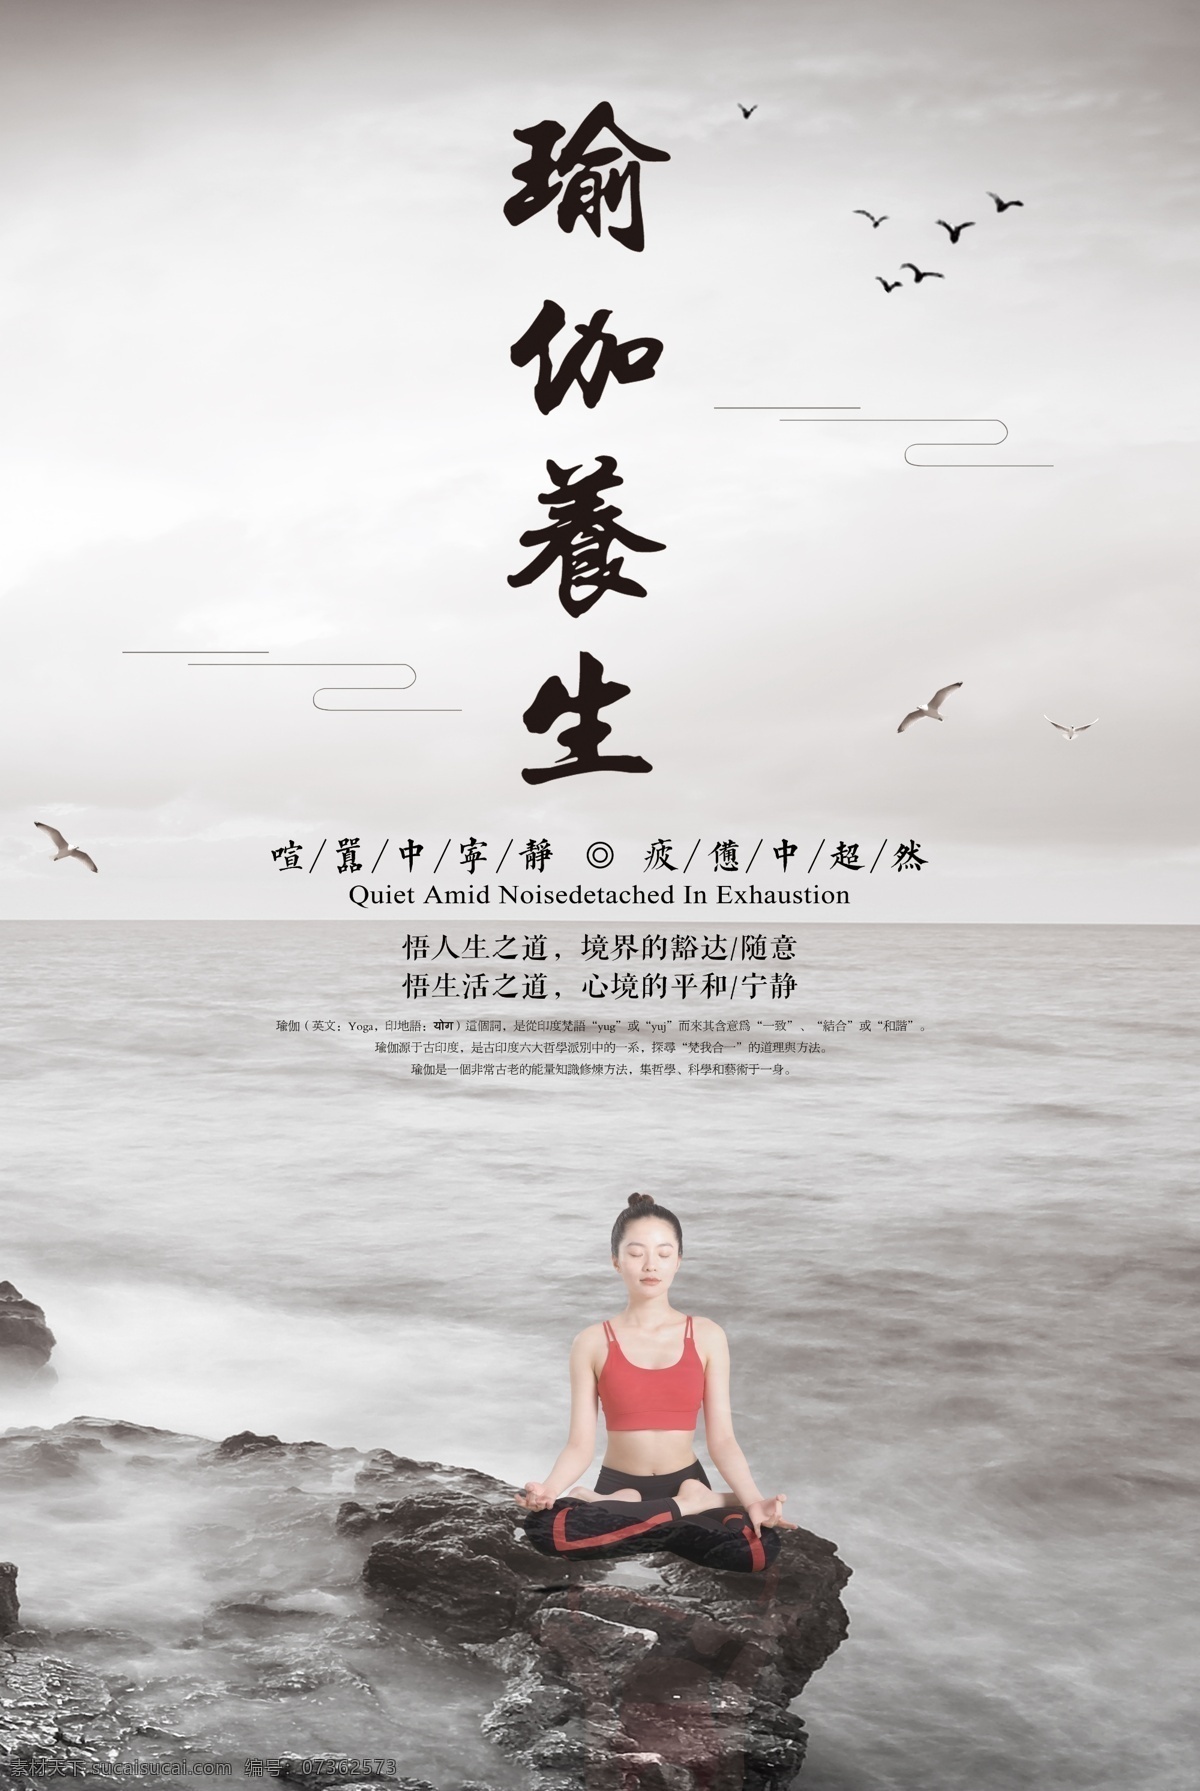 中国 风 瑜伽 养生 海报 运动 健康 形体 身材 有氧 益气 内心宁静 瑜伽海报 养生海报 感悟人生 瑜伽养生 瑜伽馆